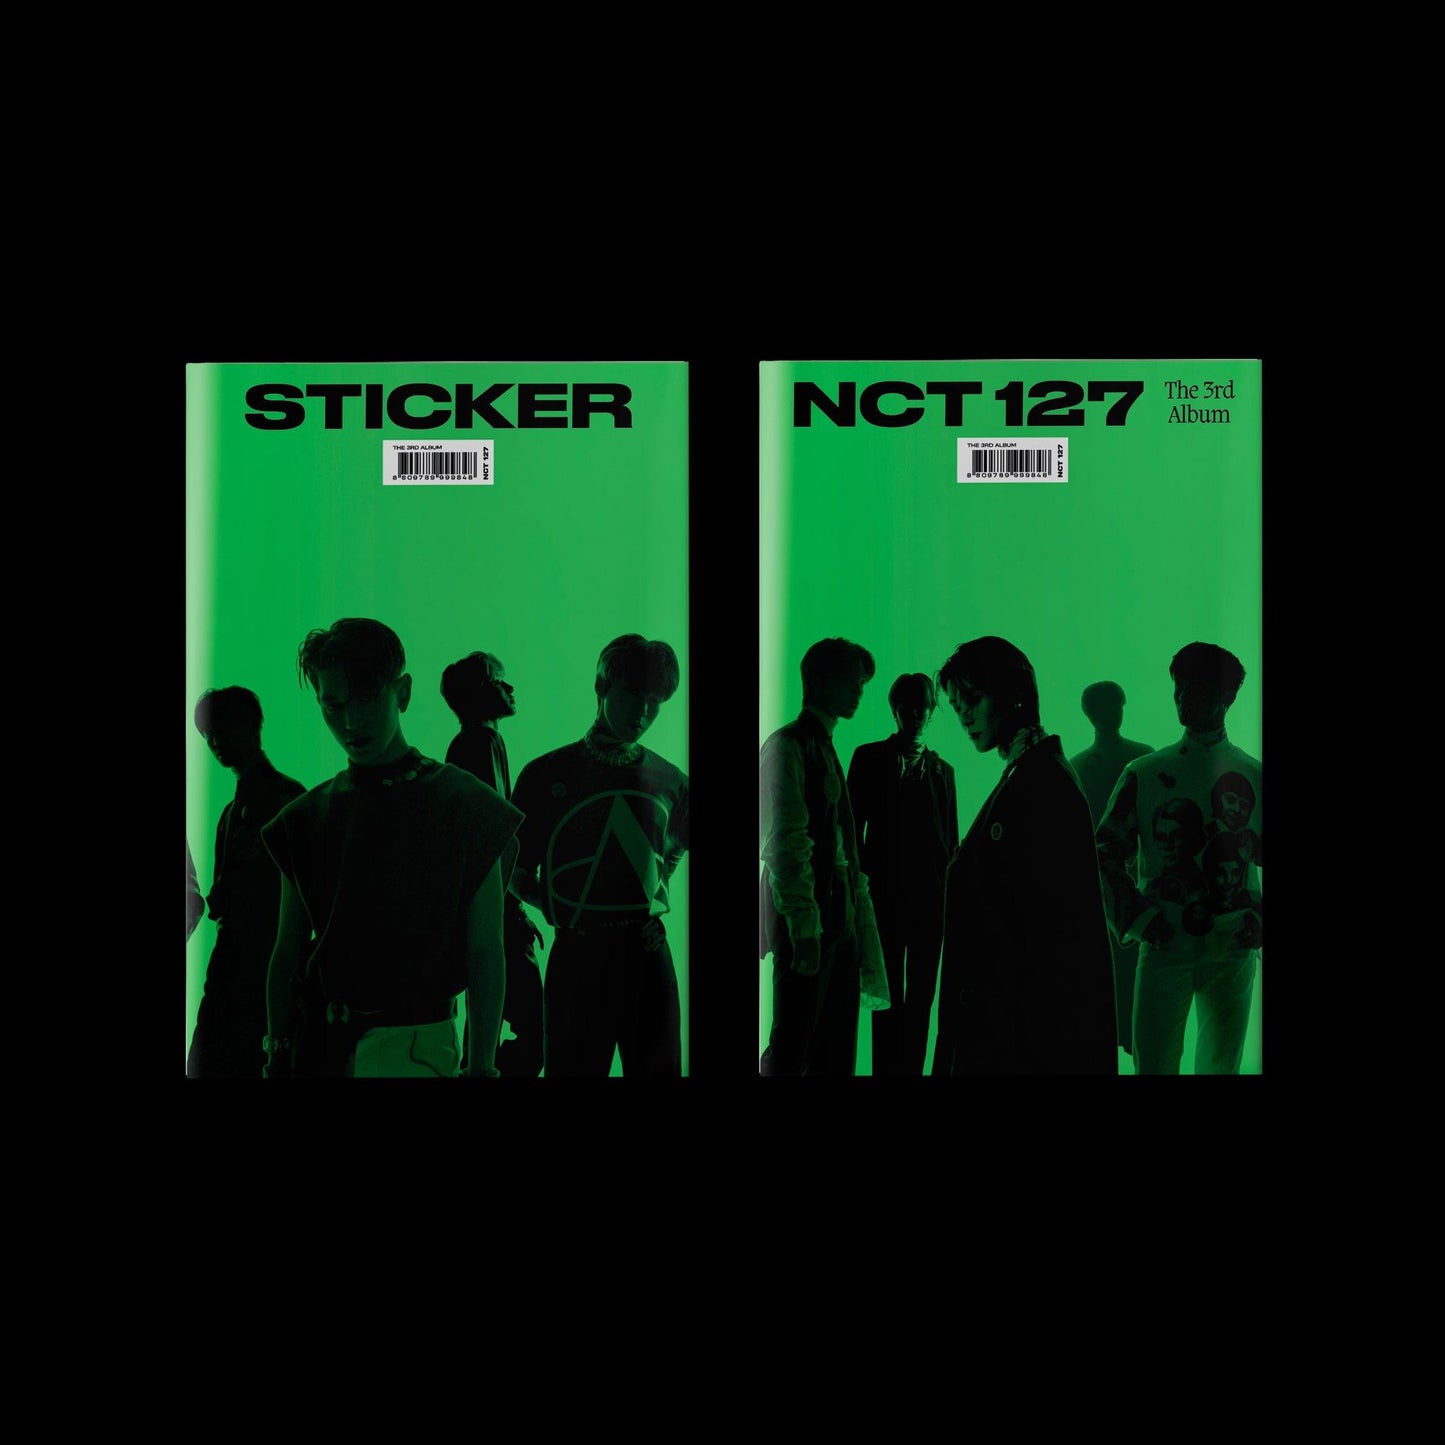 NCT 127 - VOL.3 - Sticker - J-Store Online